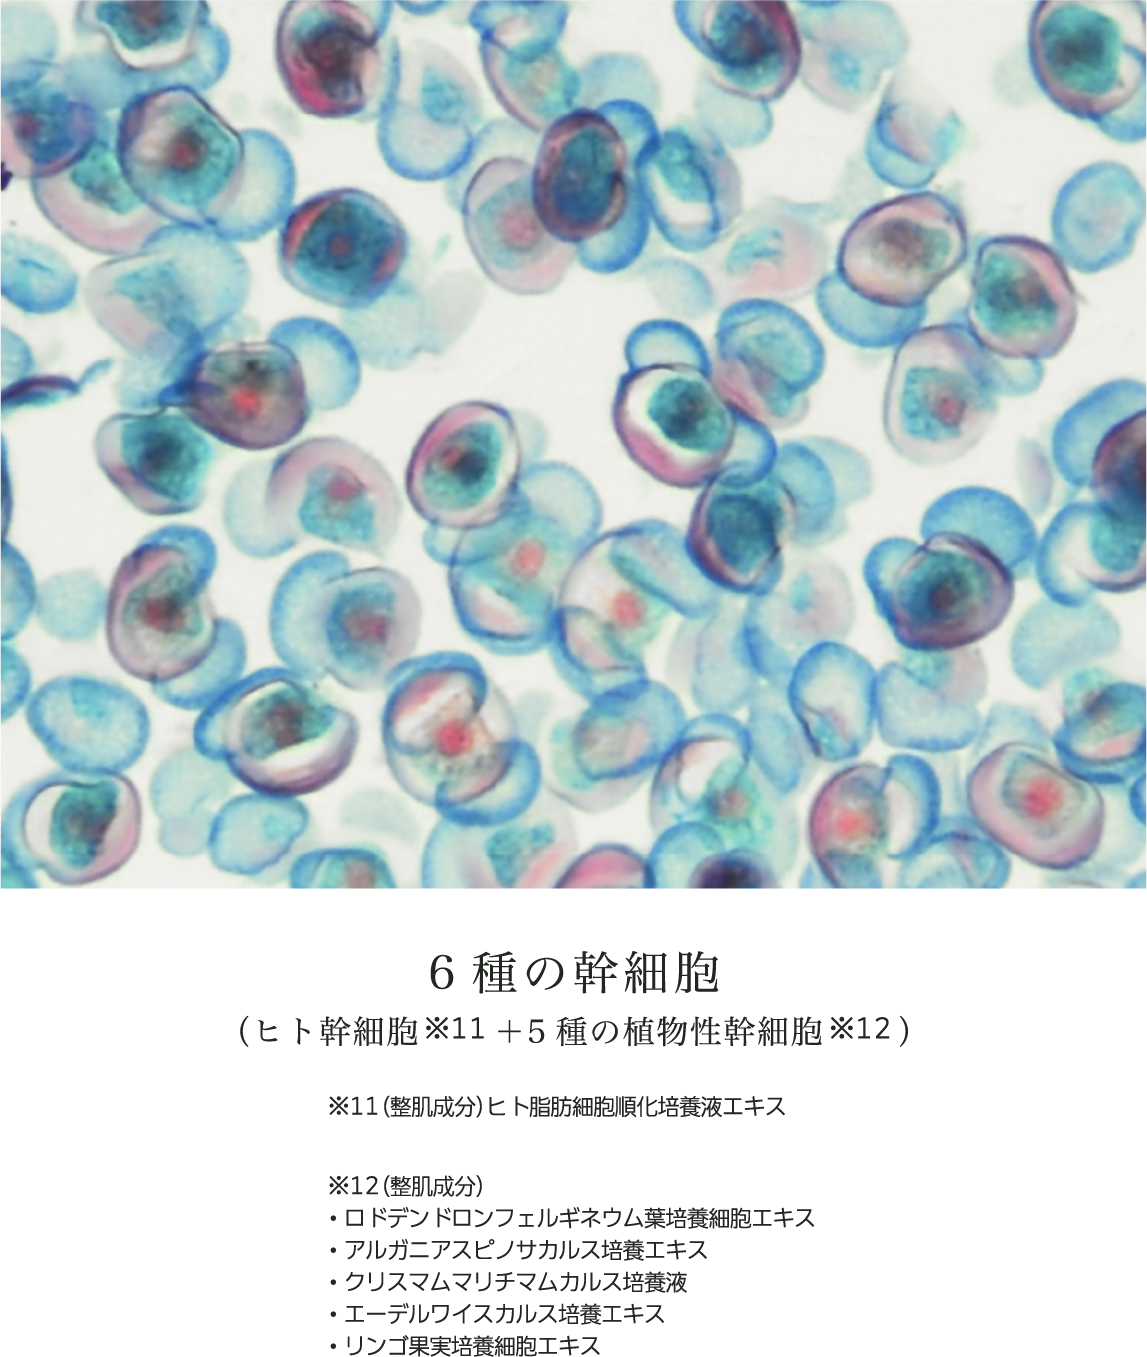 6種の幹細胞